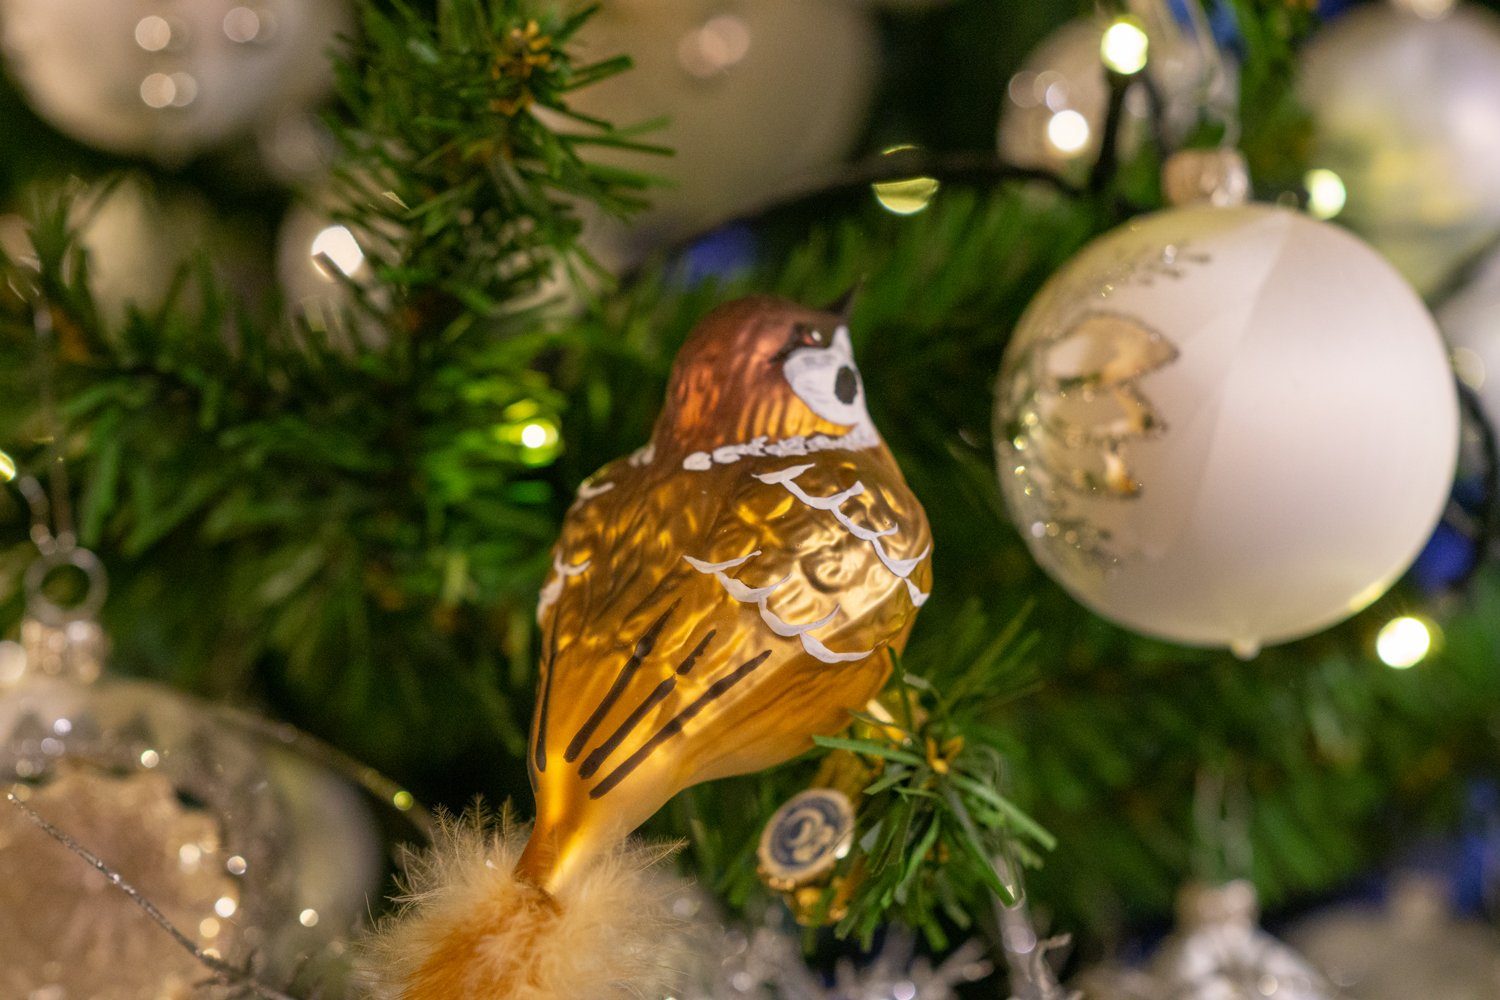 Herstellung mundgeblasen, Christbaumschmuck Glasvogel eigener aus Feldsperling Birds handdekoriert, Naturfeder, Glass of mit